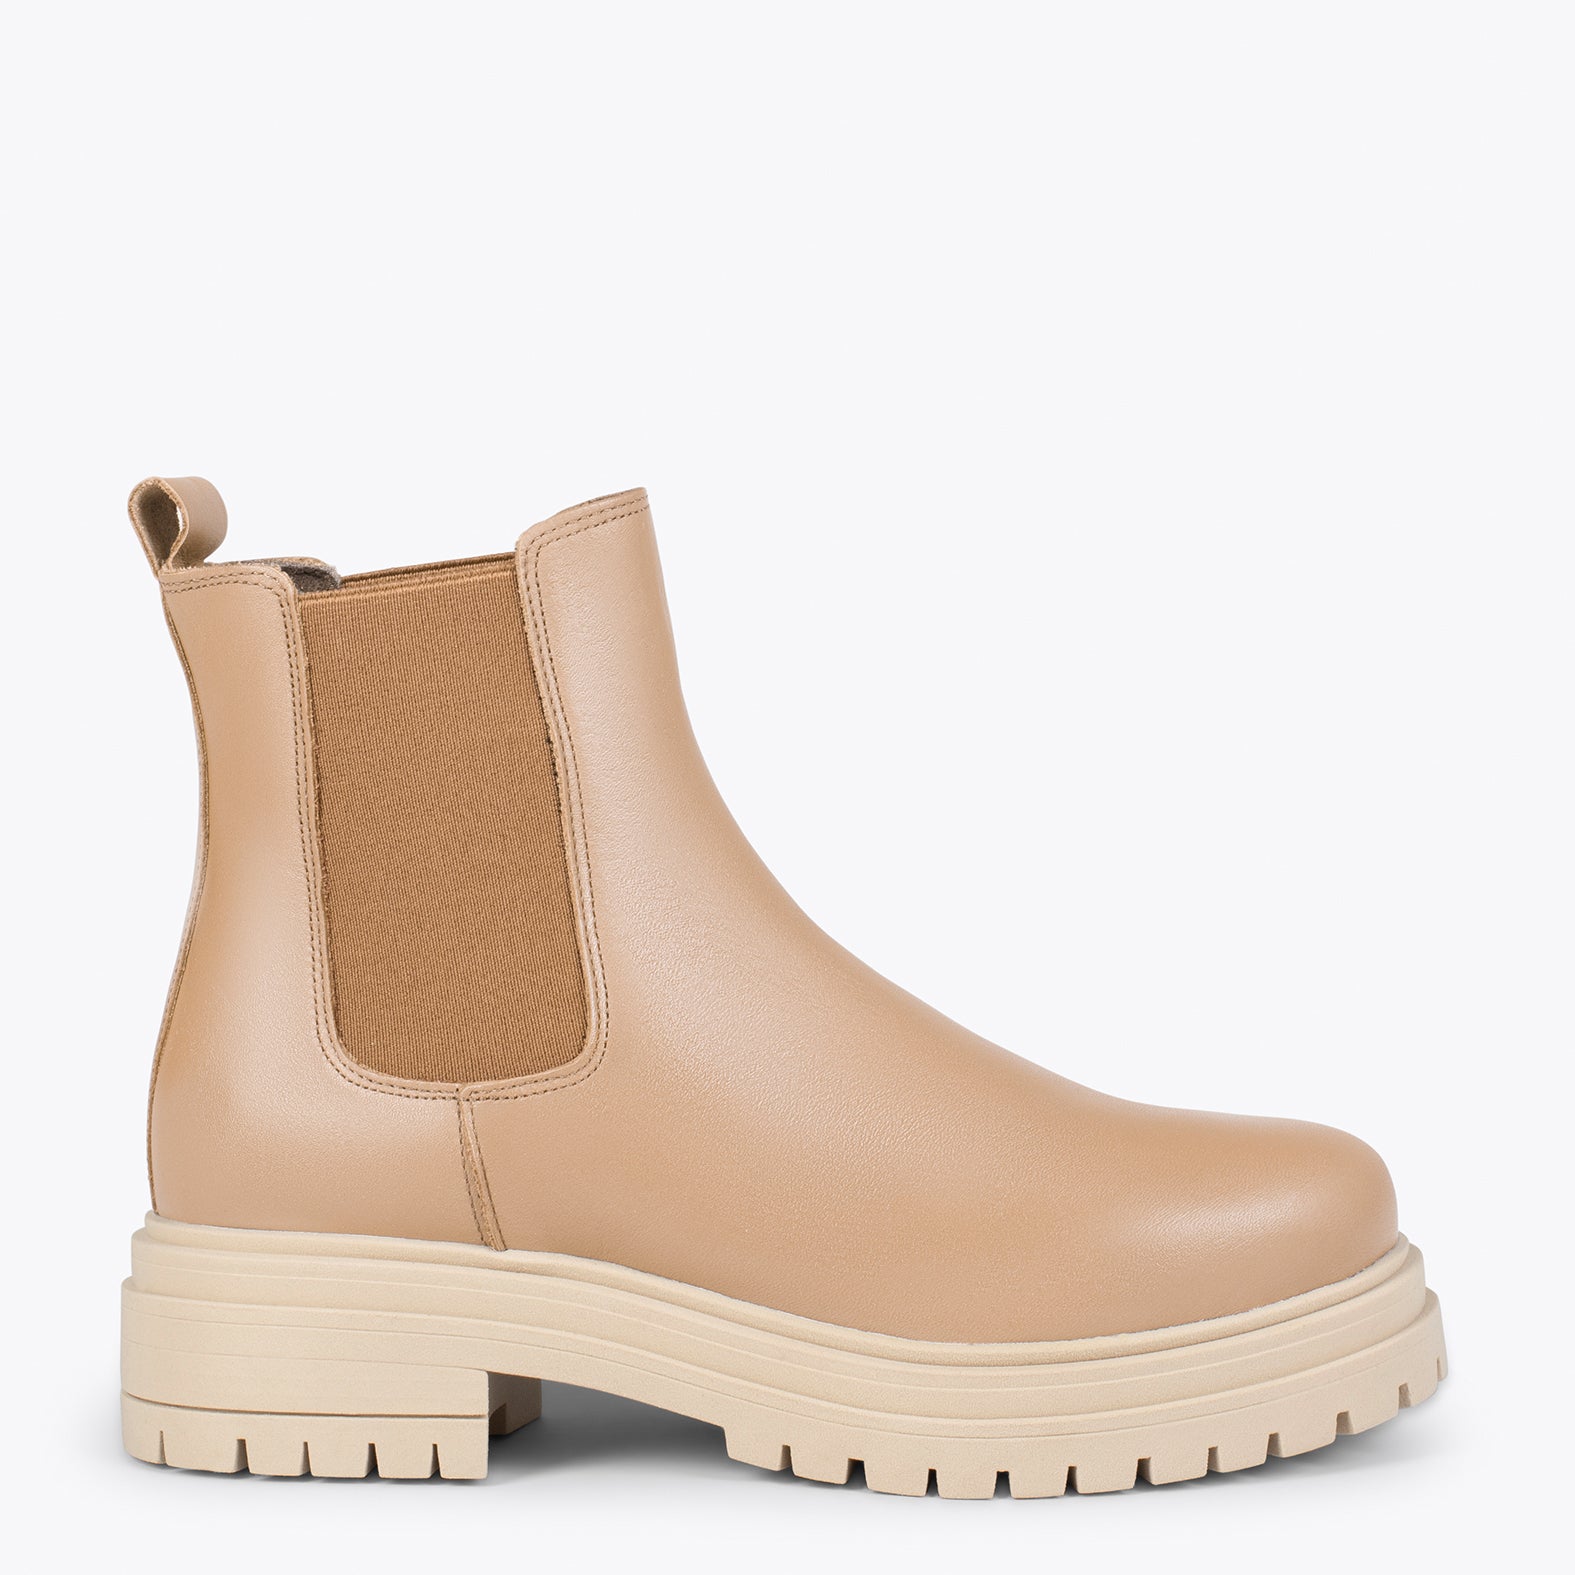 LEEDS – BEIGE leather booties with platform